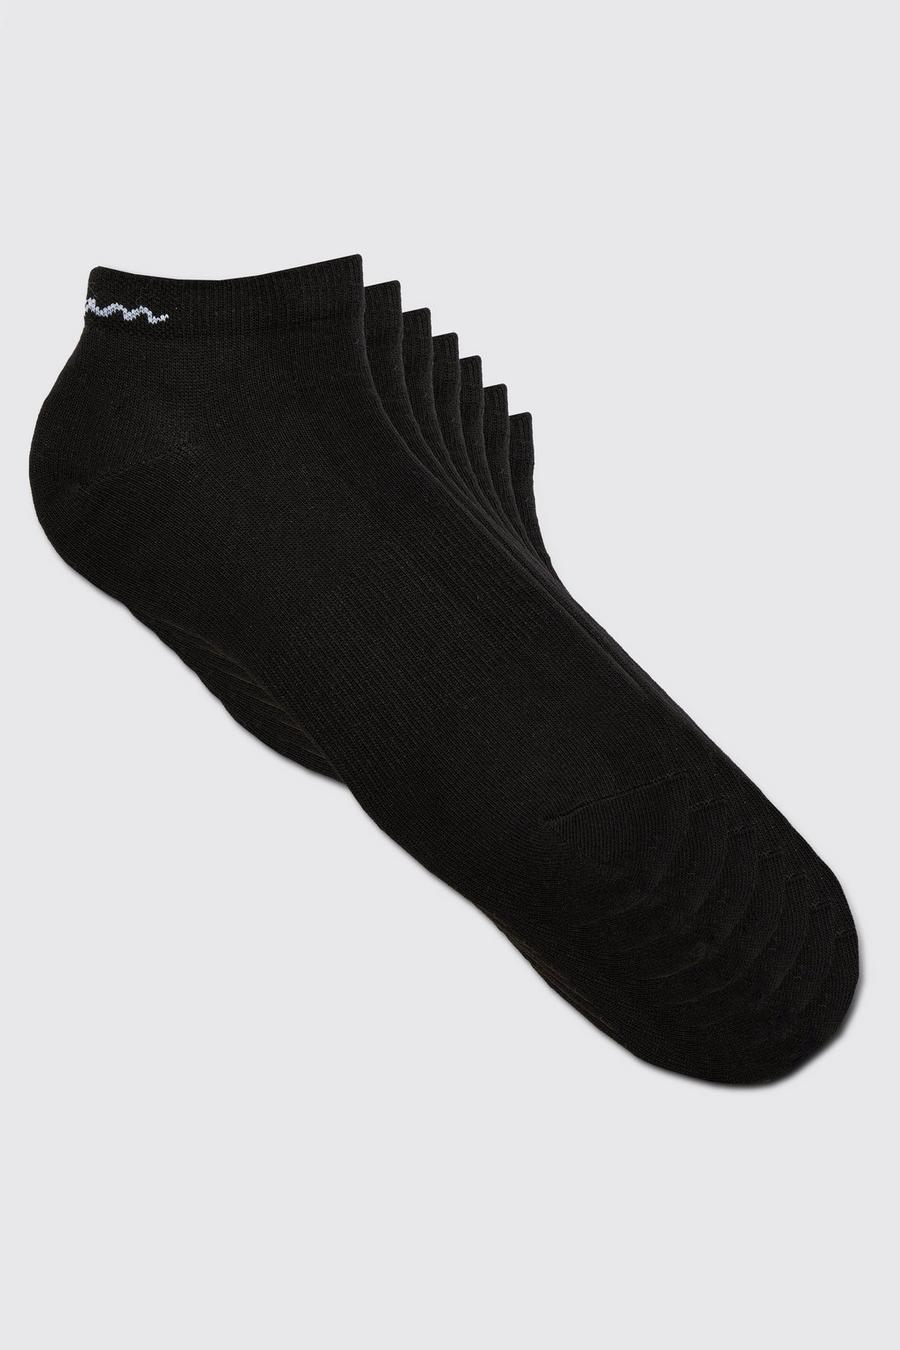 Pack de 7 pares de calcetines deportivos con firma MAN, Black negro